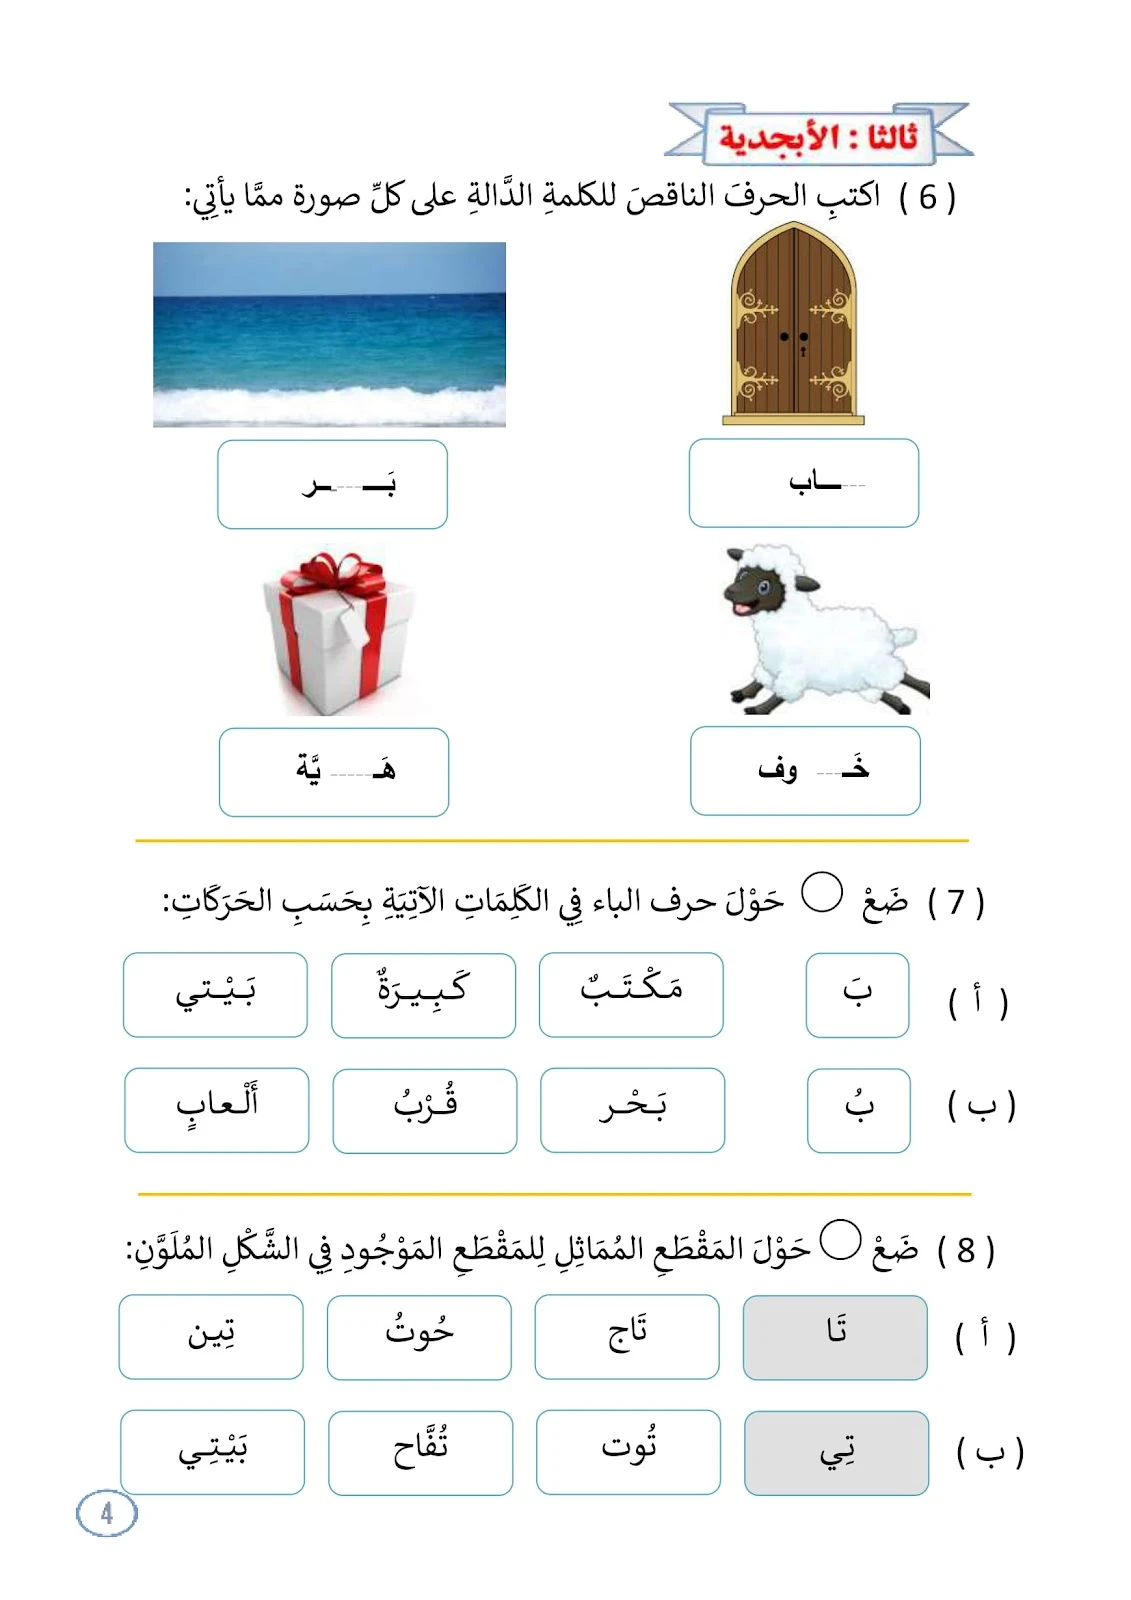 افضل مذكرة مراجعة للغة العربية الصف الأول pdf تحميل مباشر